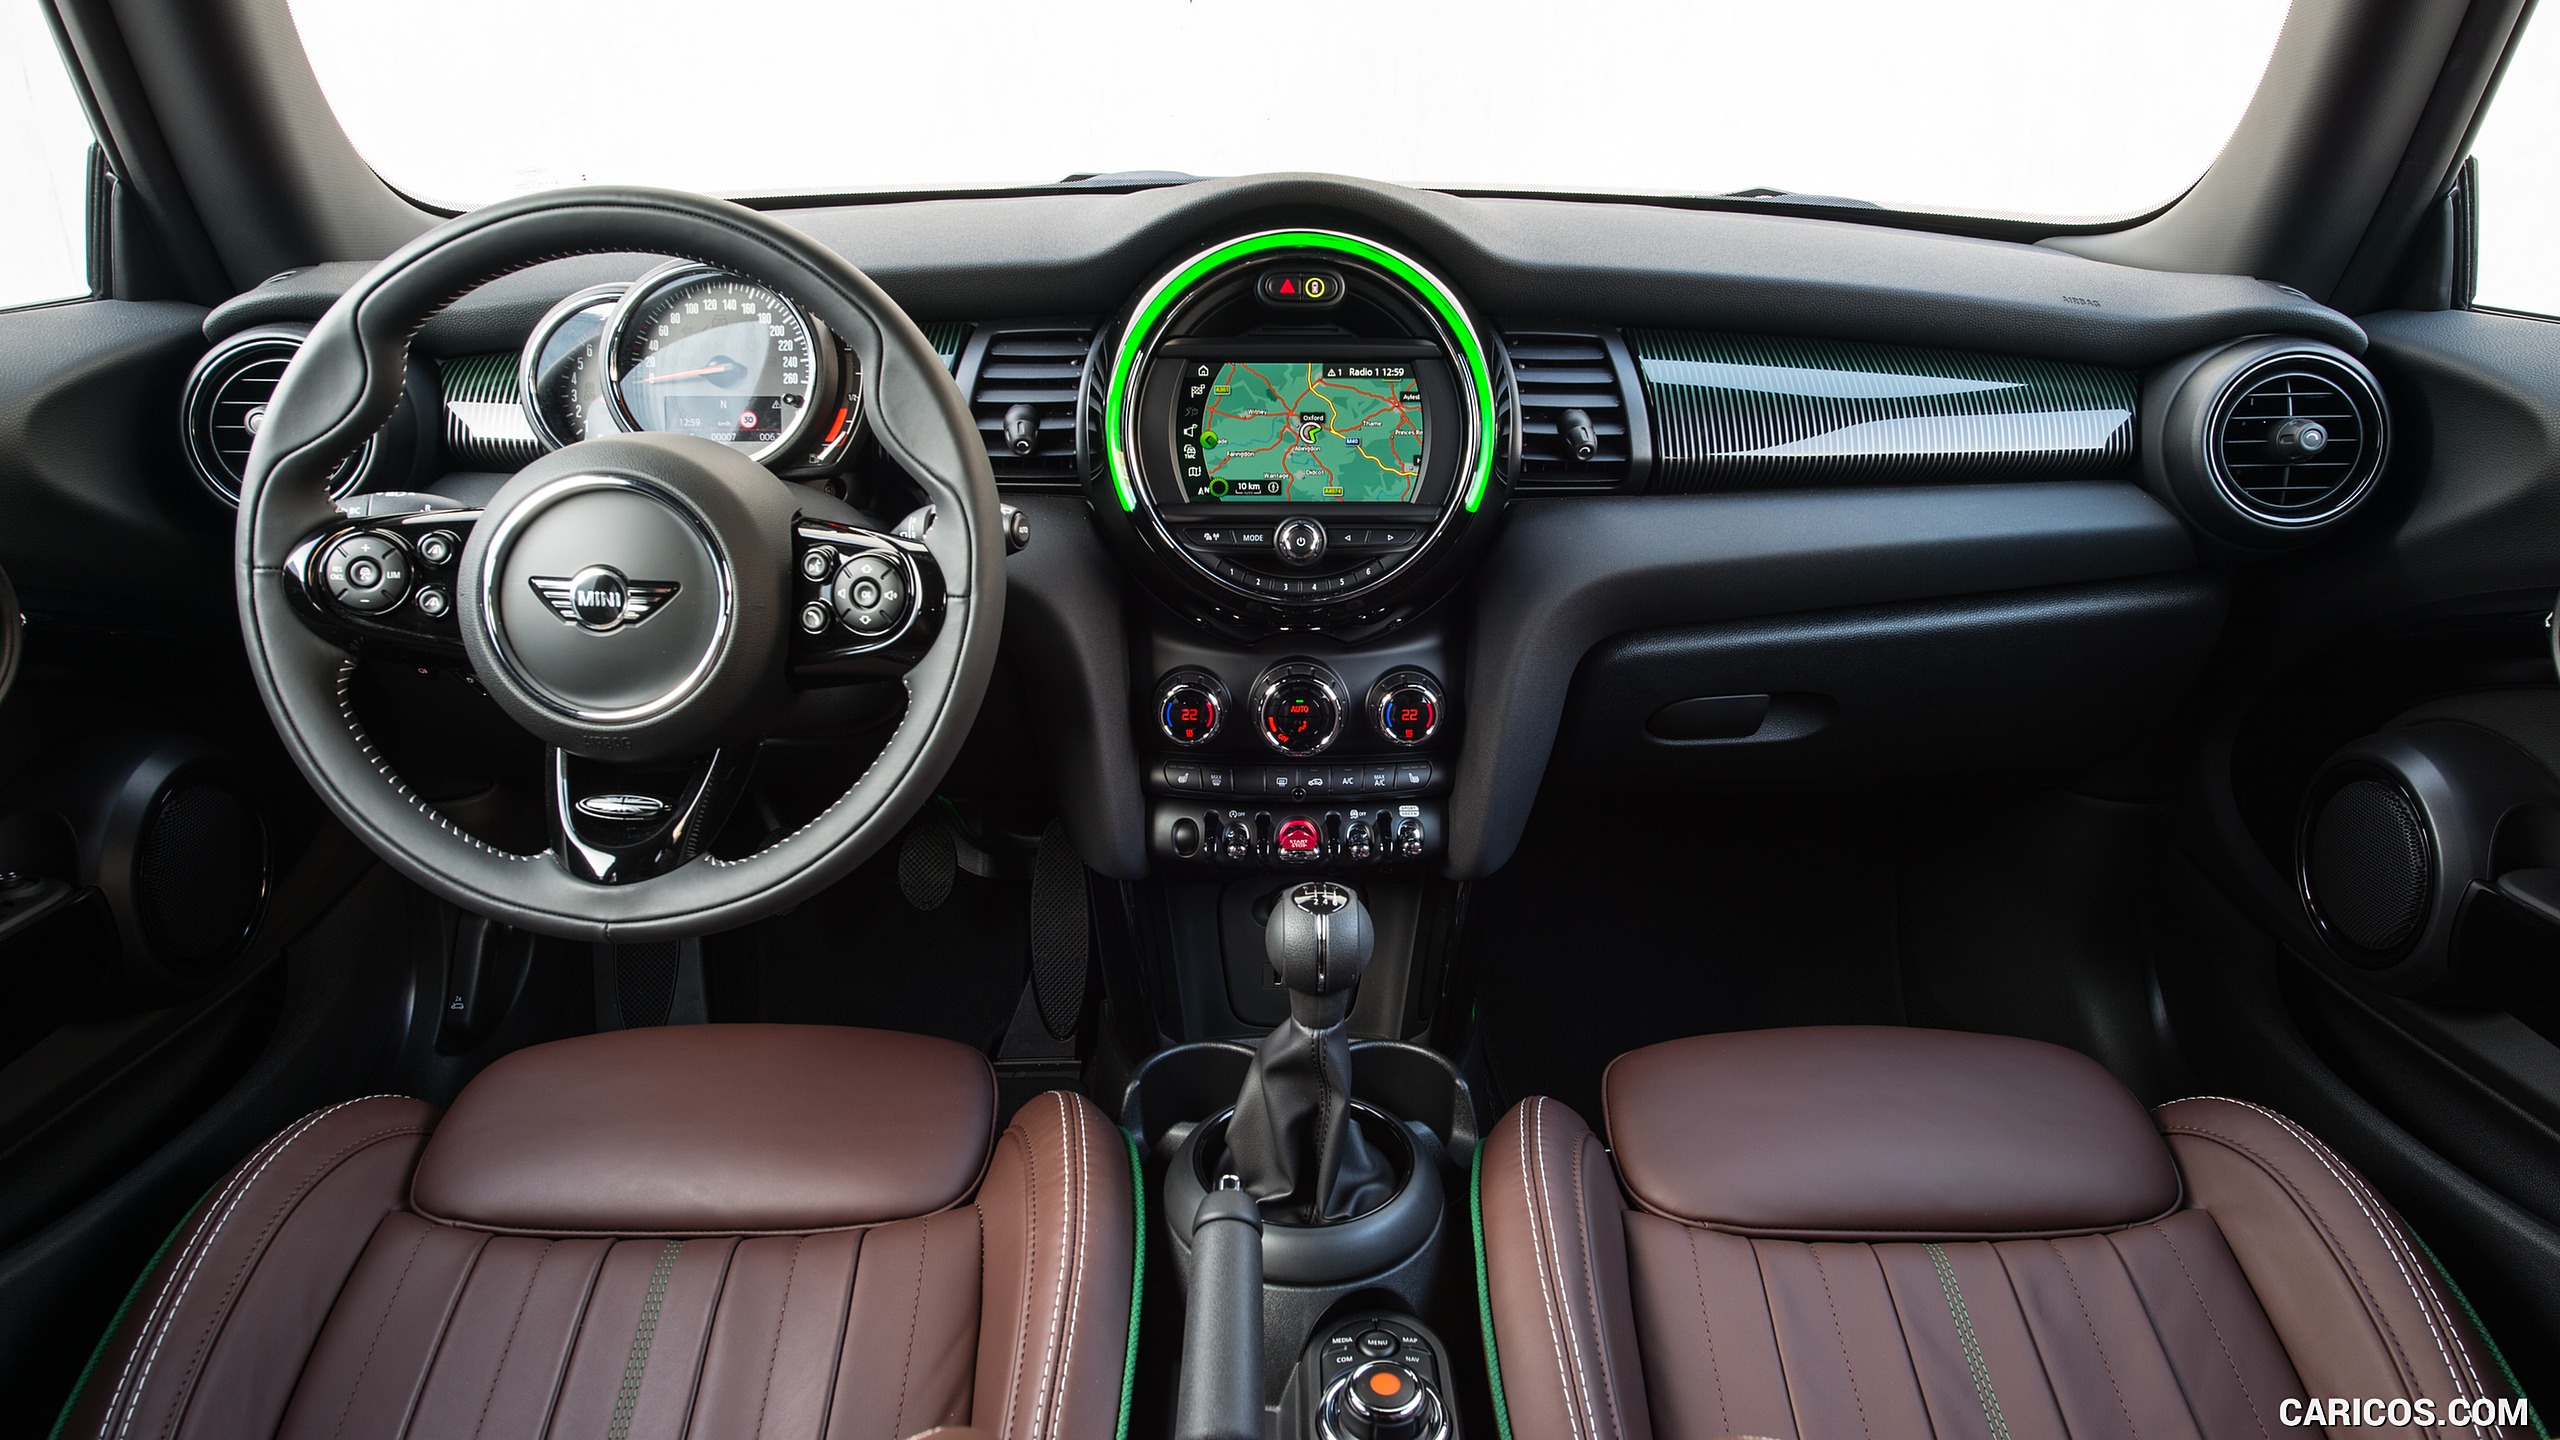 2019 MINI Cooper 3-Door 60 Years Edition - Interior, Cockpit, #81 of 102